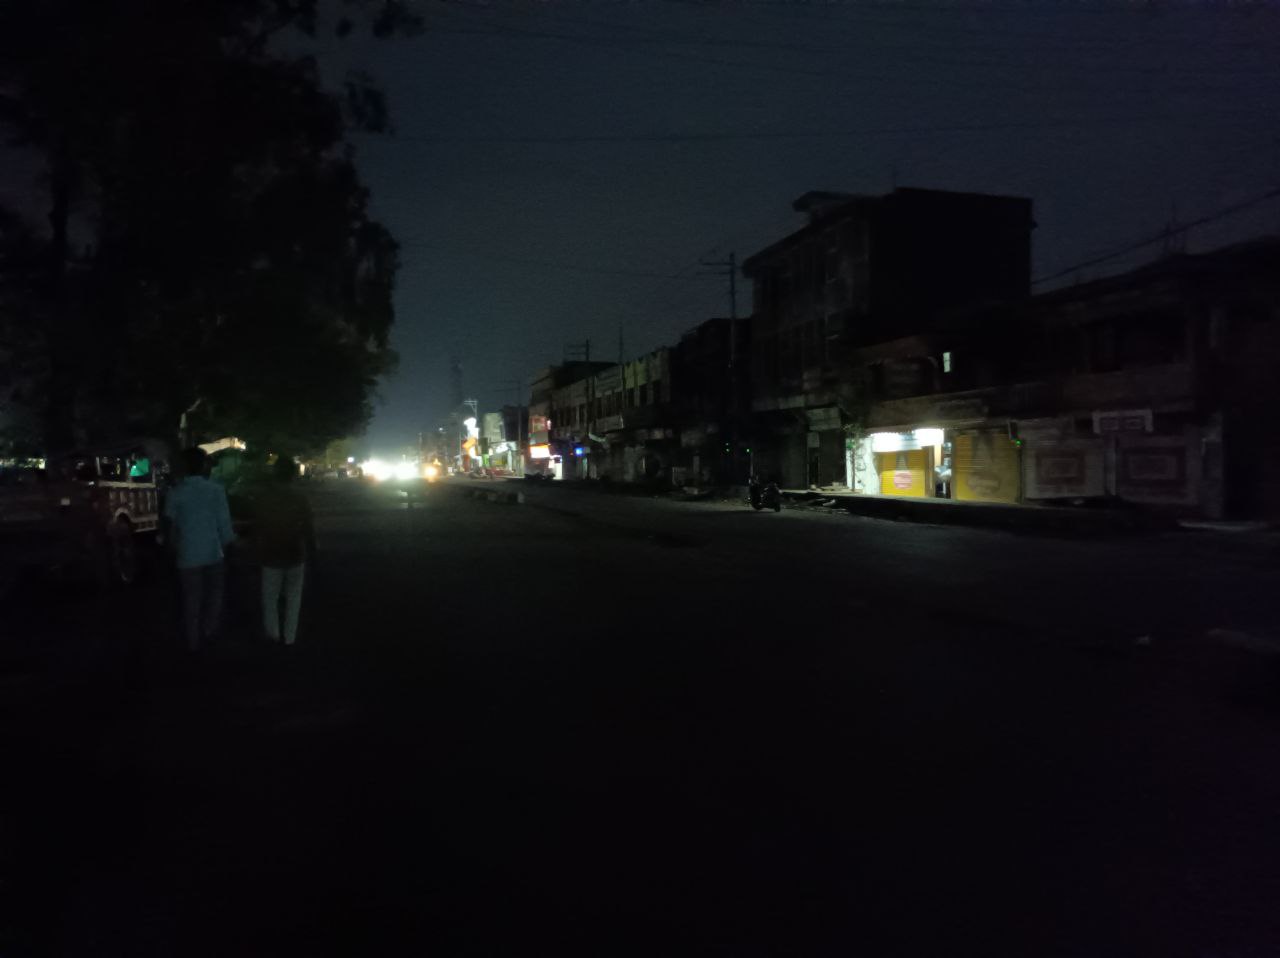 दीपावली का त्यौहार नजदीक, सागर रोड पर रात में अंधेरा